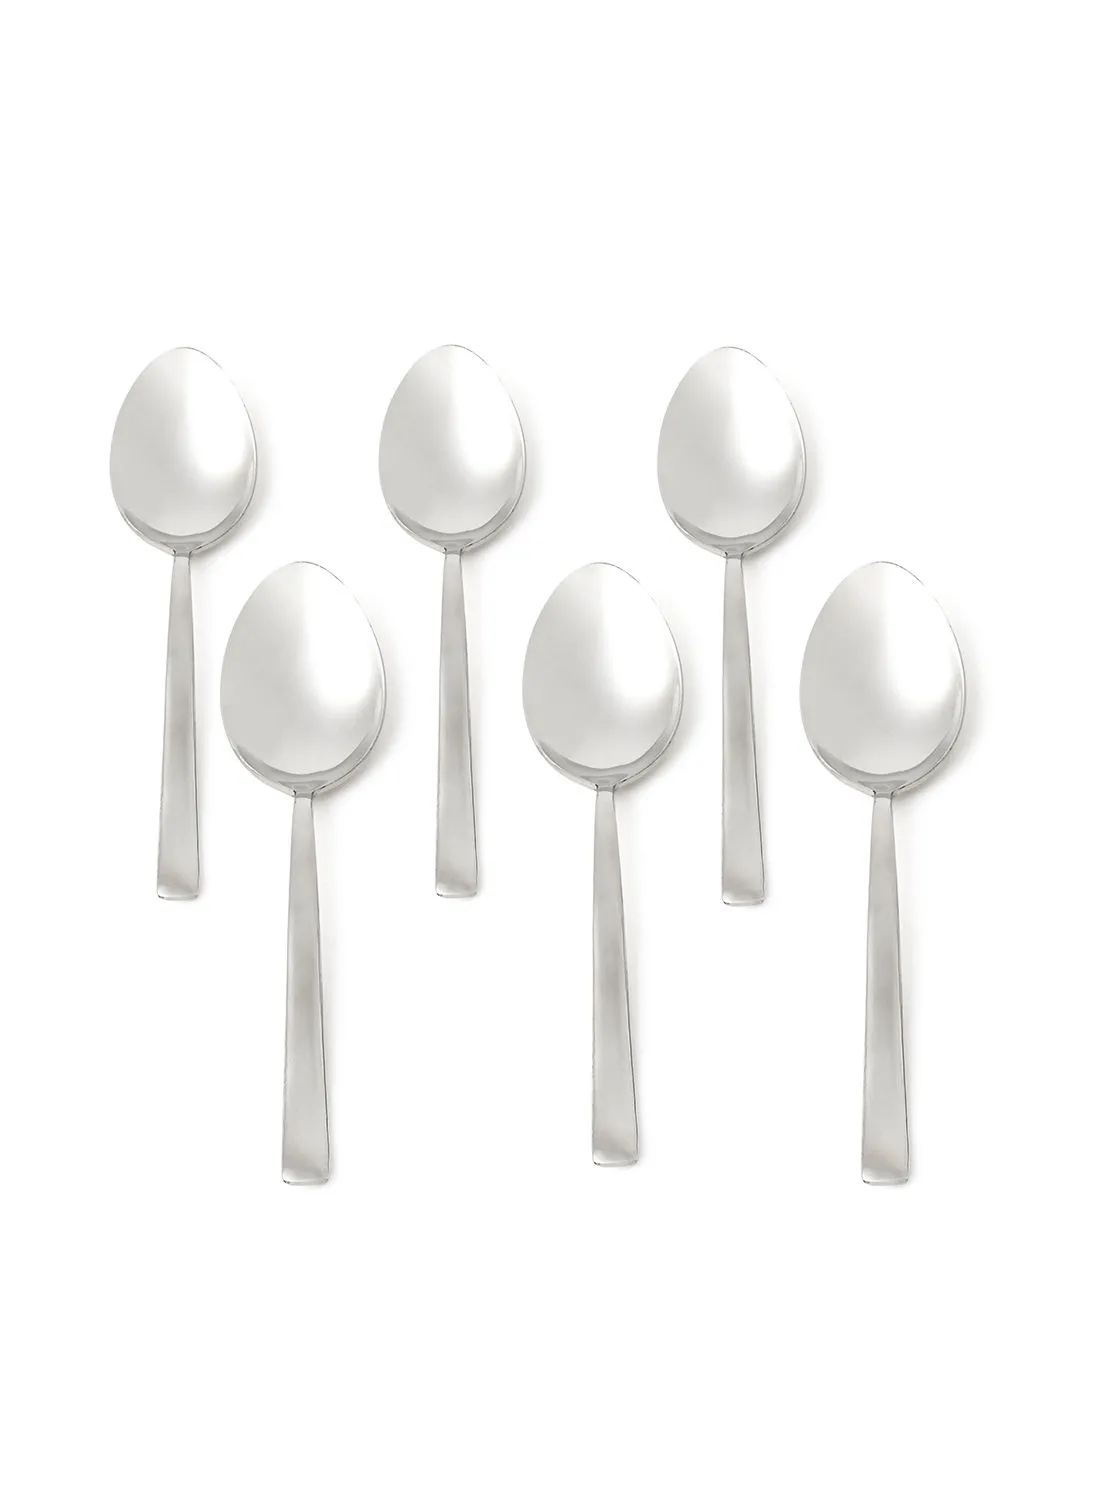 noon east 6 Piece Teaspoons Set - Made Of Stainless Steel - Silverware Flatware - Spoons - Spoon Set - Tea Spoons - Serves 6 - Design Spade Silver